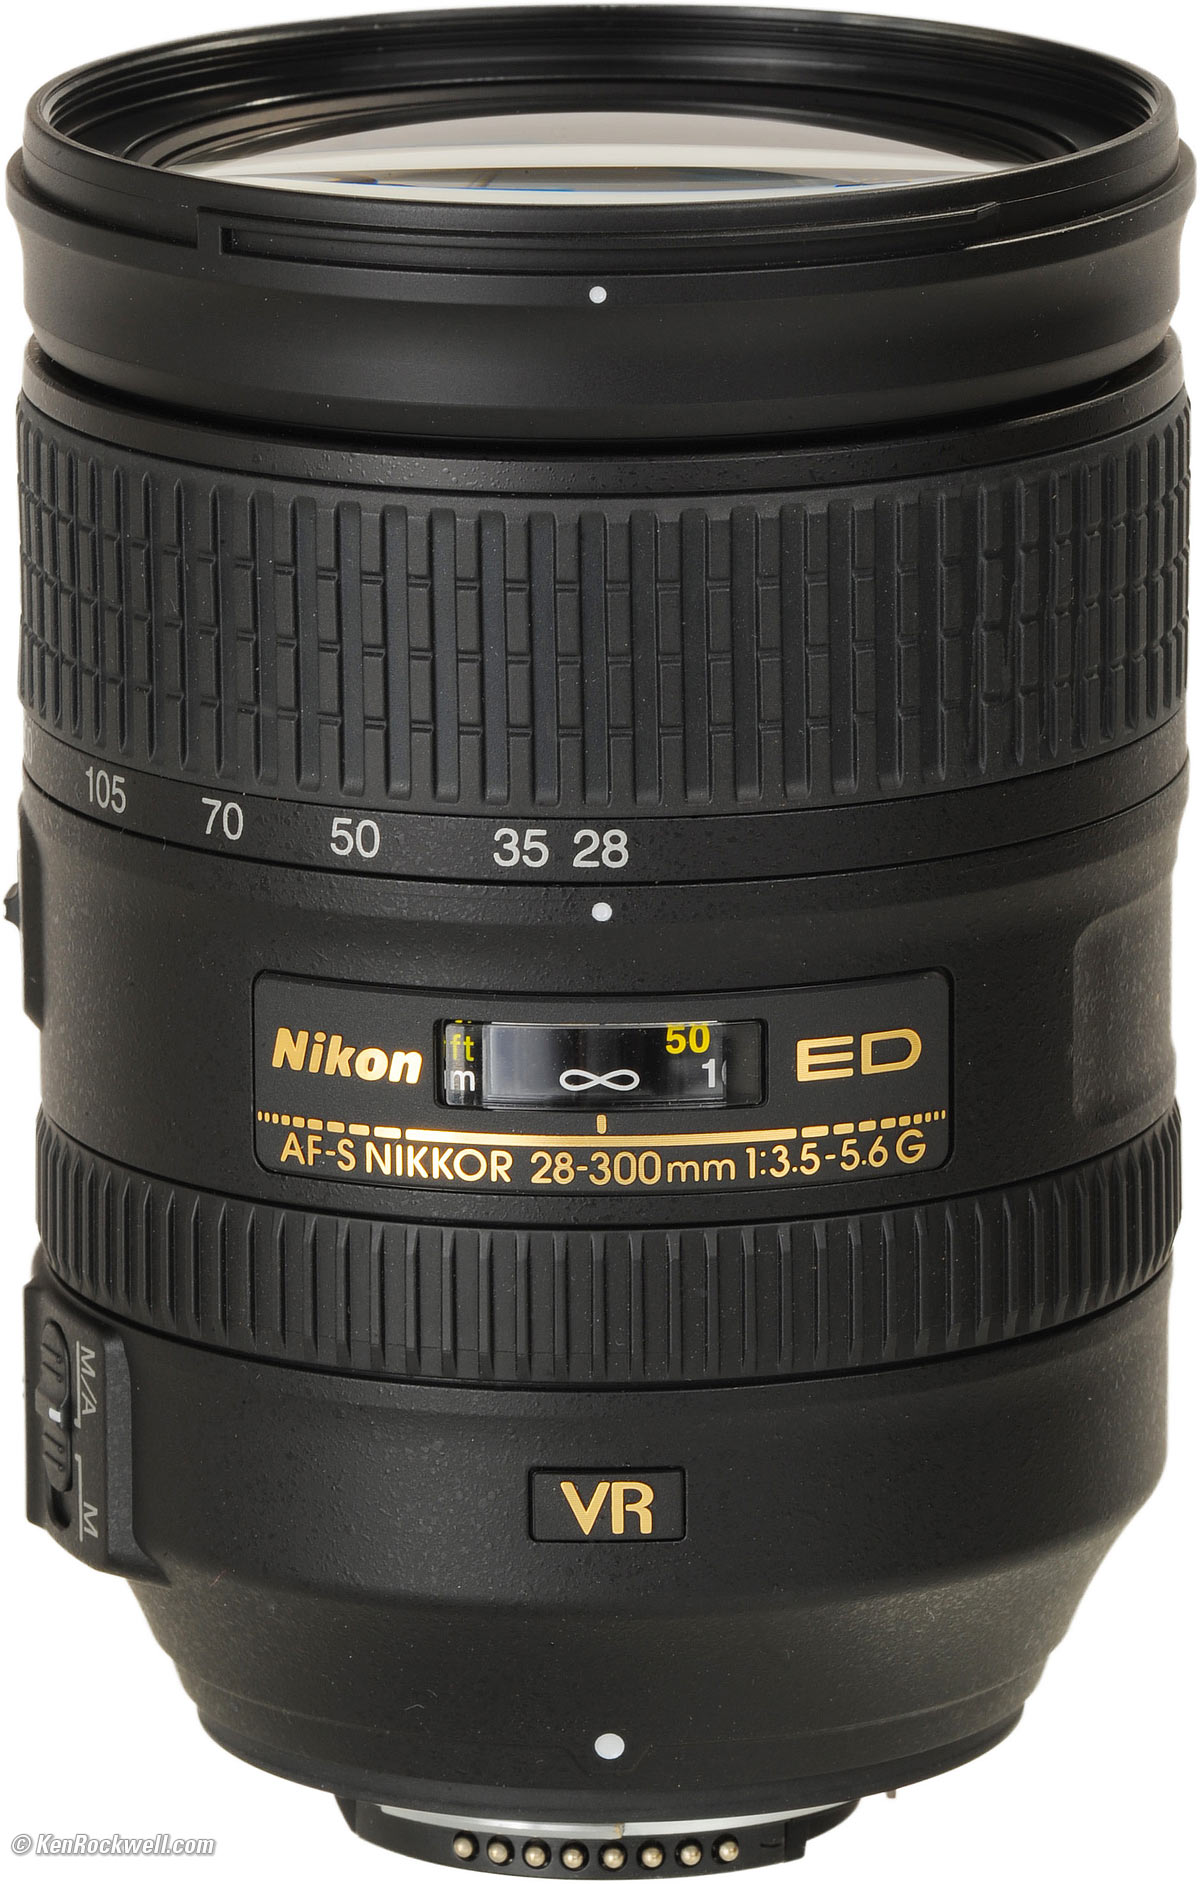 Nikon 18-200mm VR